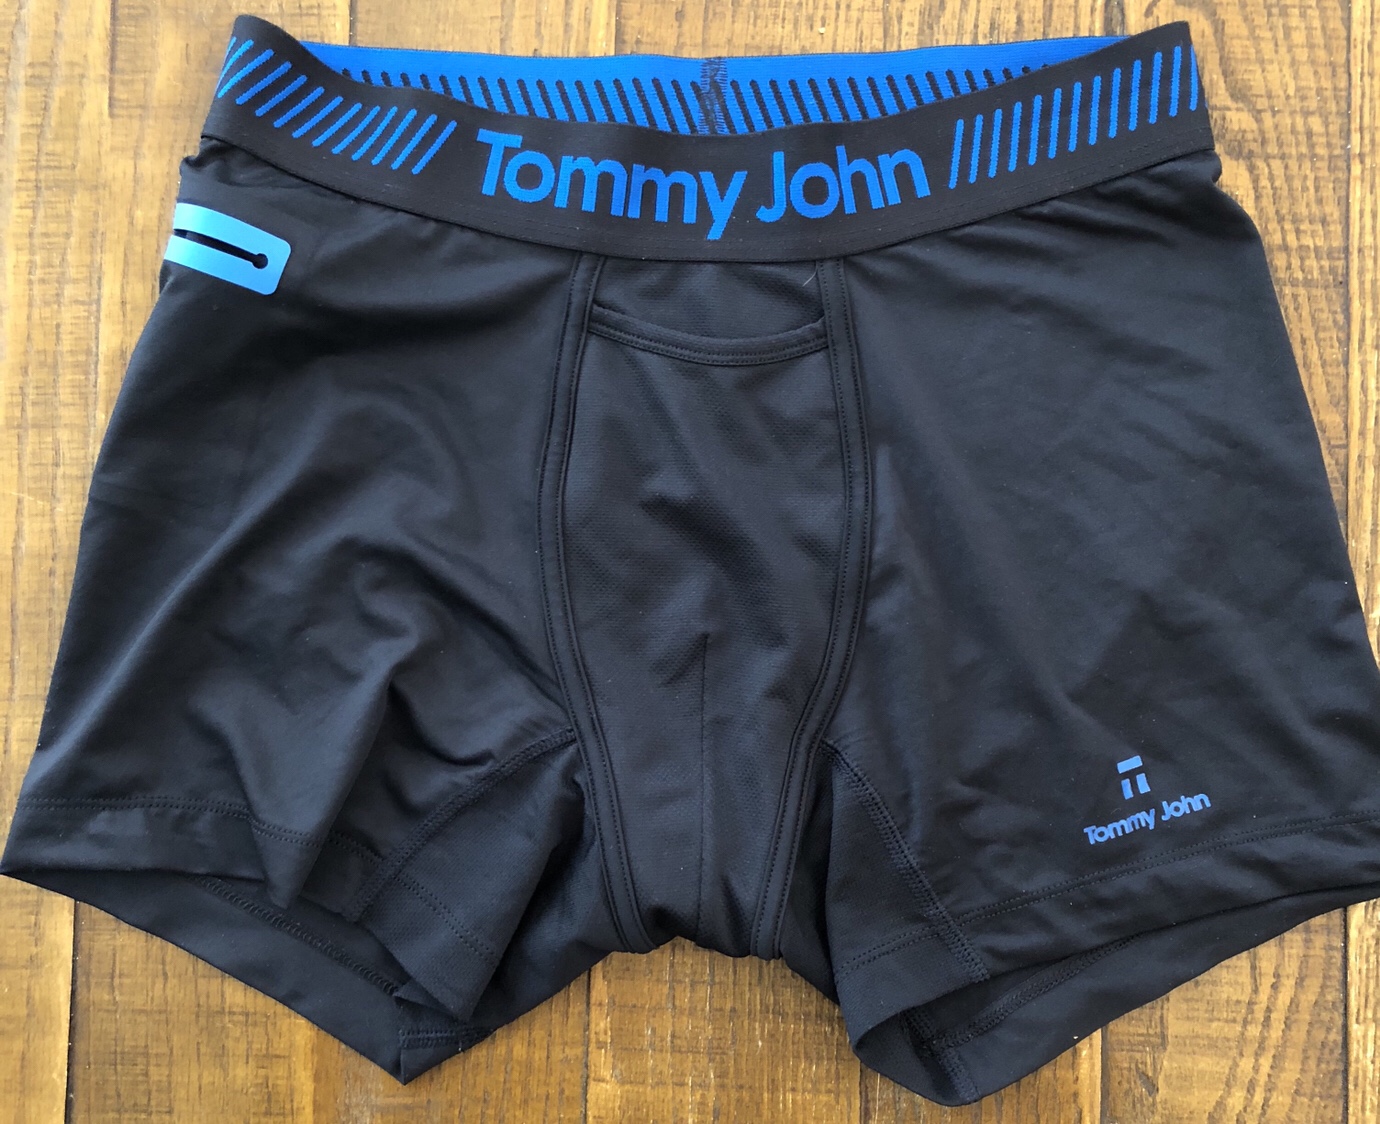 buy tommy john underwear